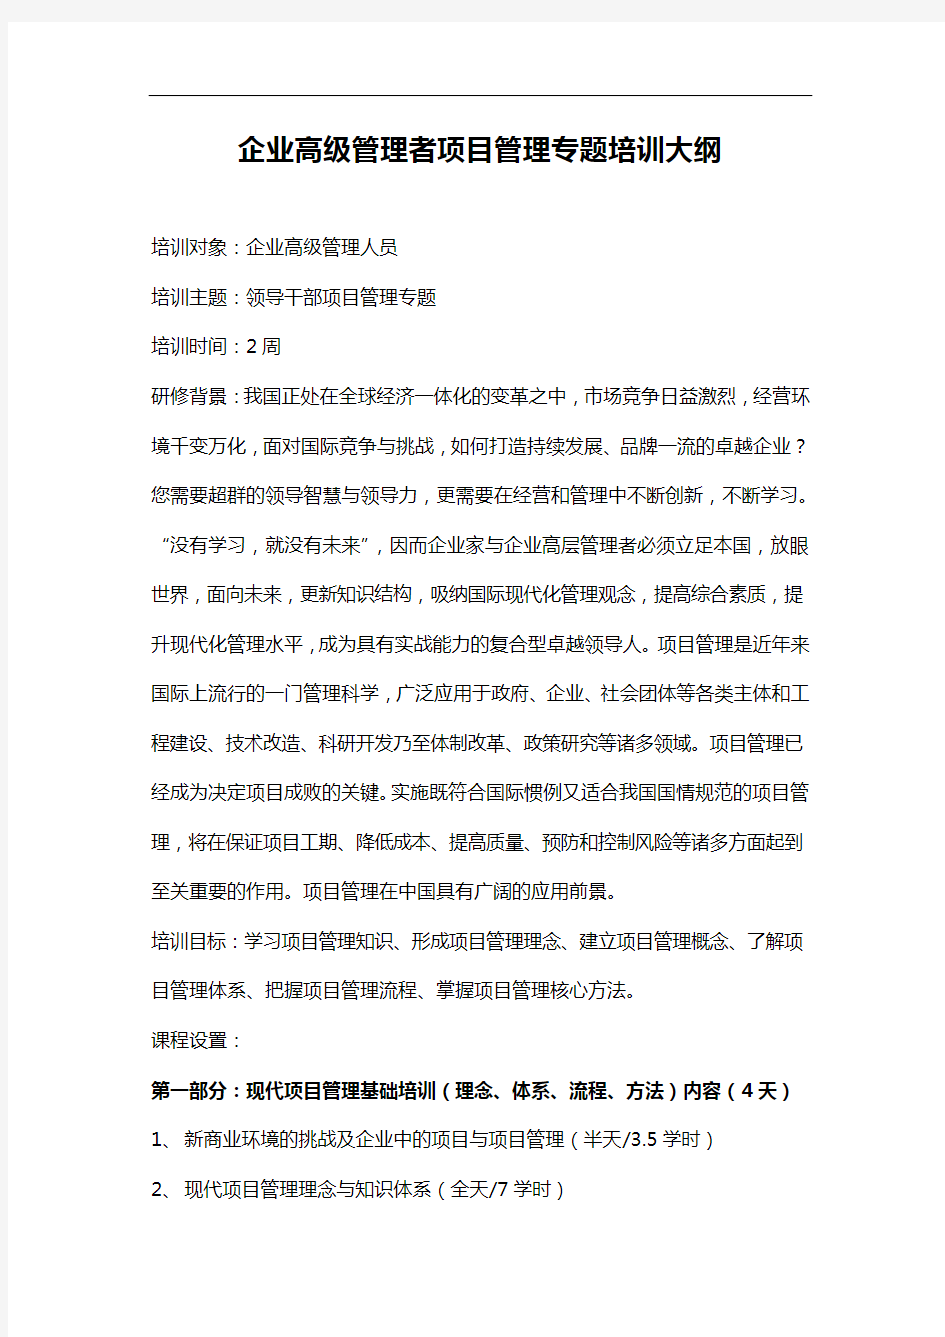 刘国靖：企业高级管理者项目管理大纲修订